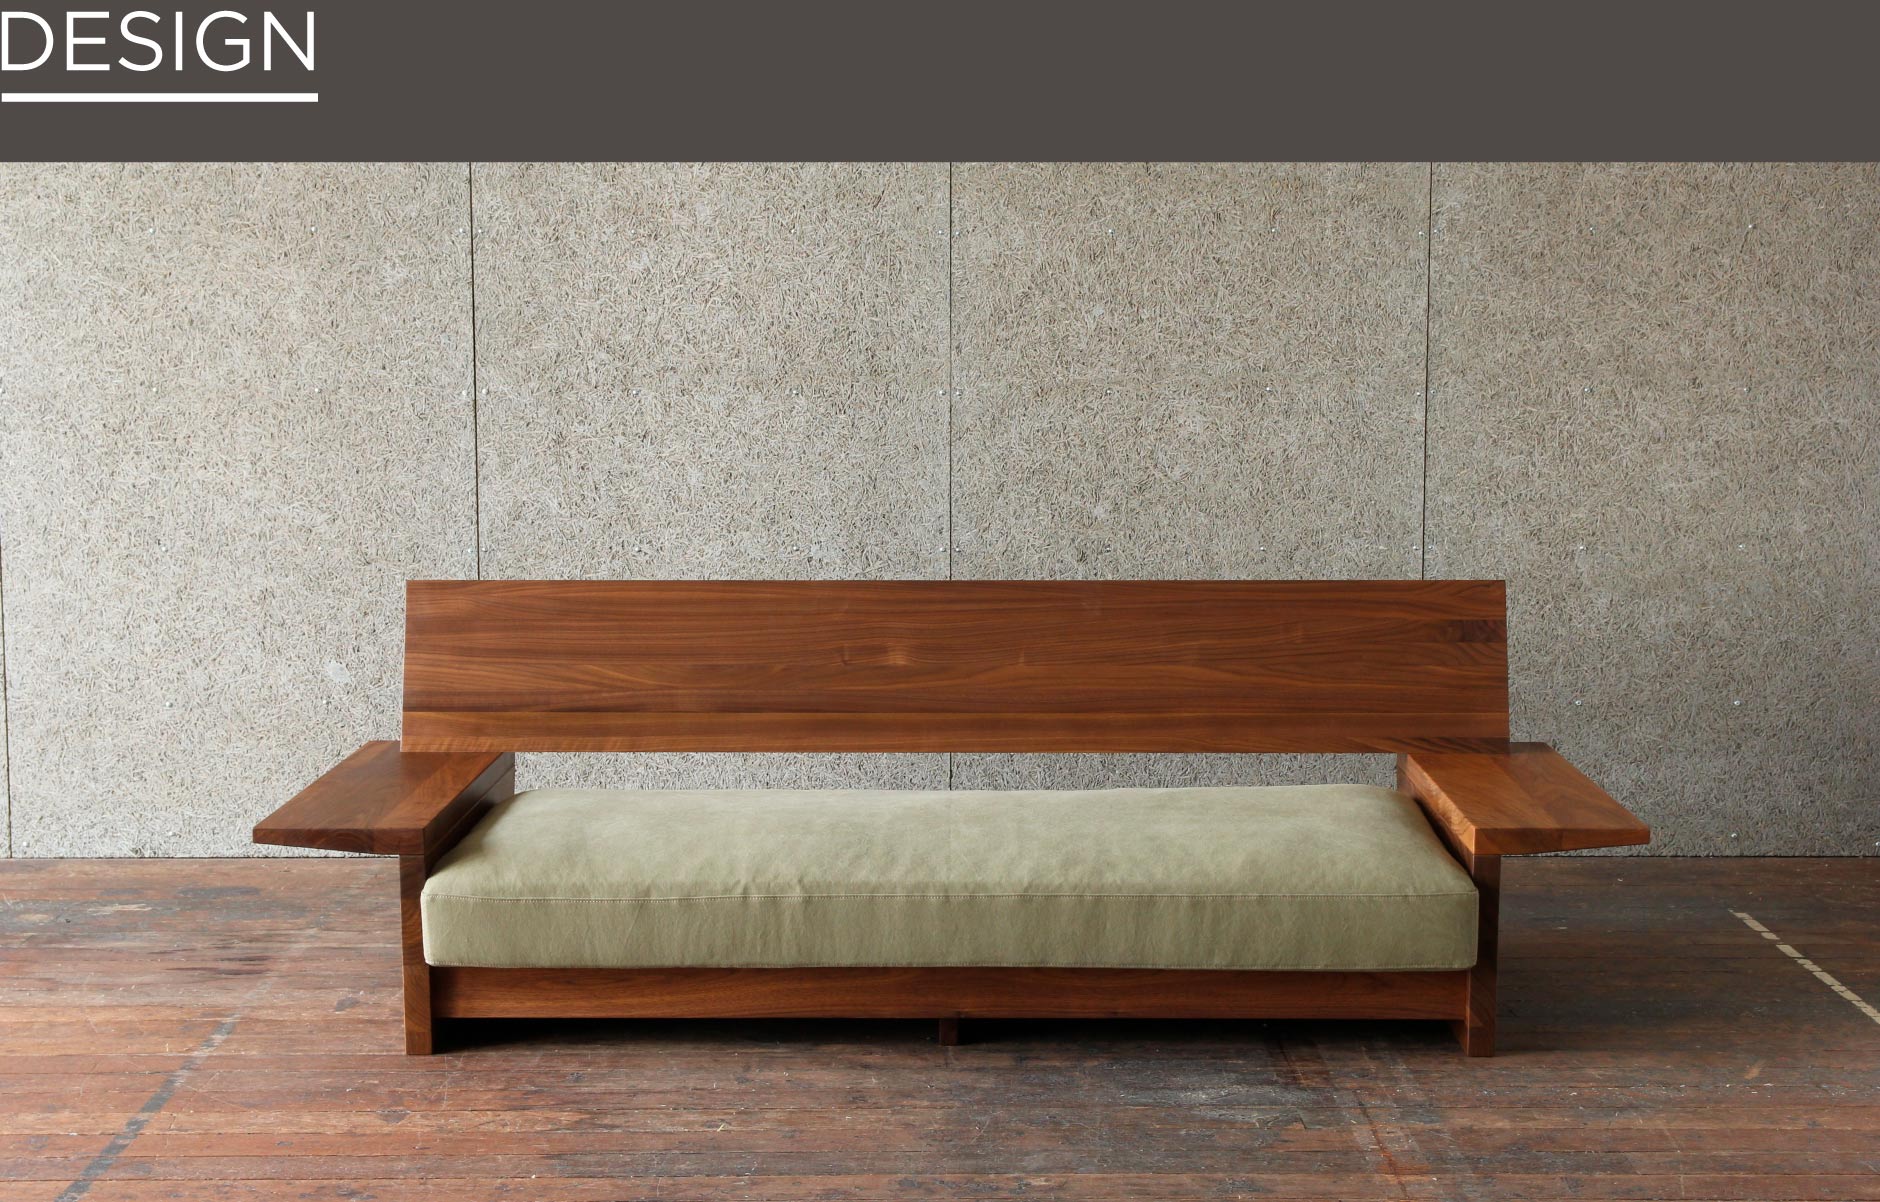 無垢家具ブランドSOLID横浜店の木製ソファ。天然木を贅沢に使用したフレームで高級感漂うリビングシーンを生み出します。